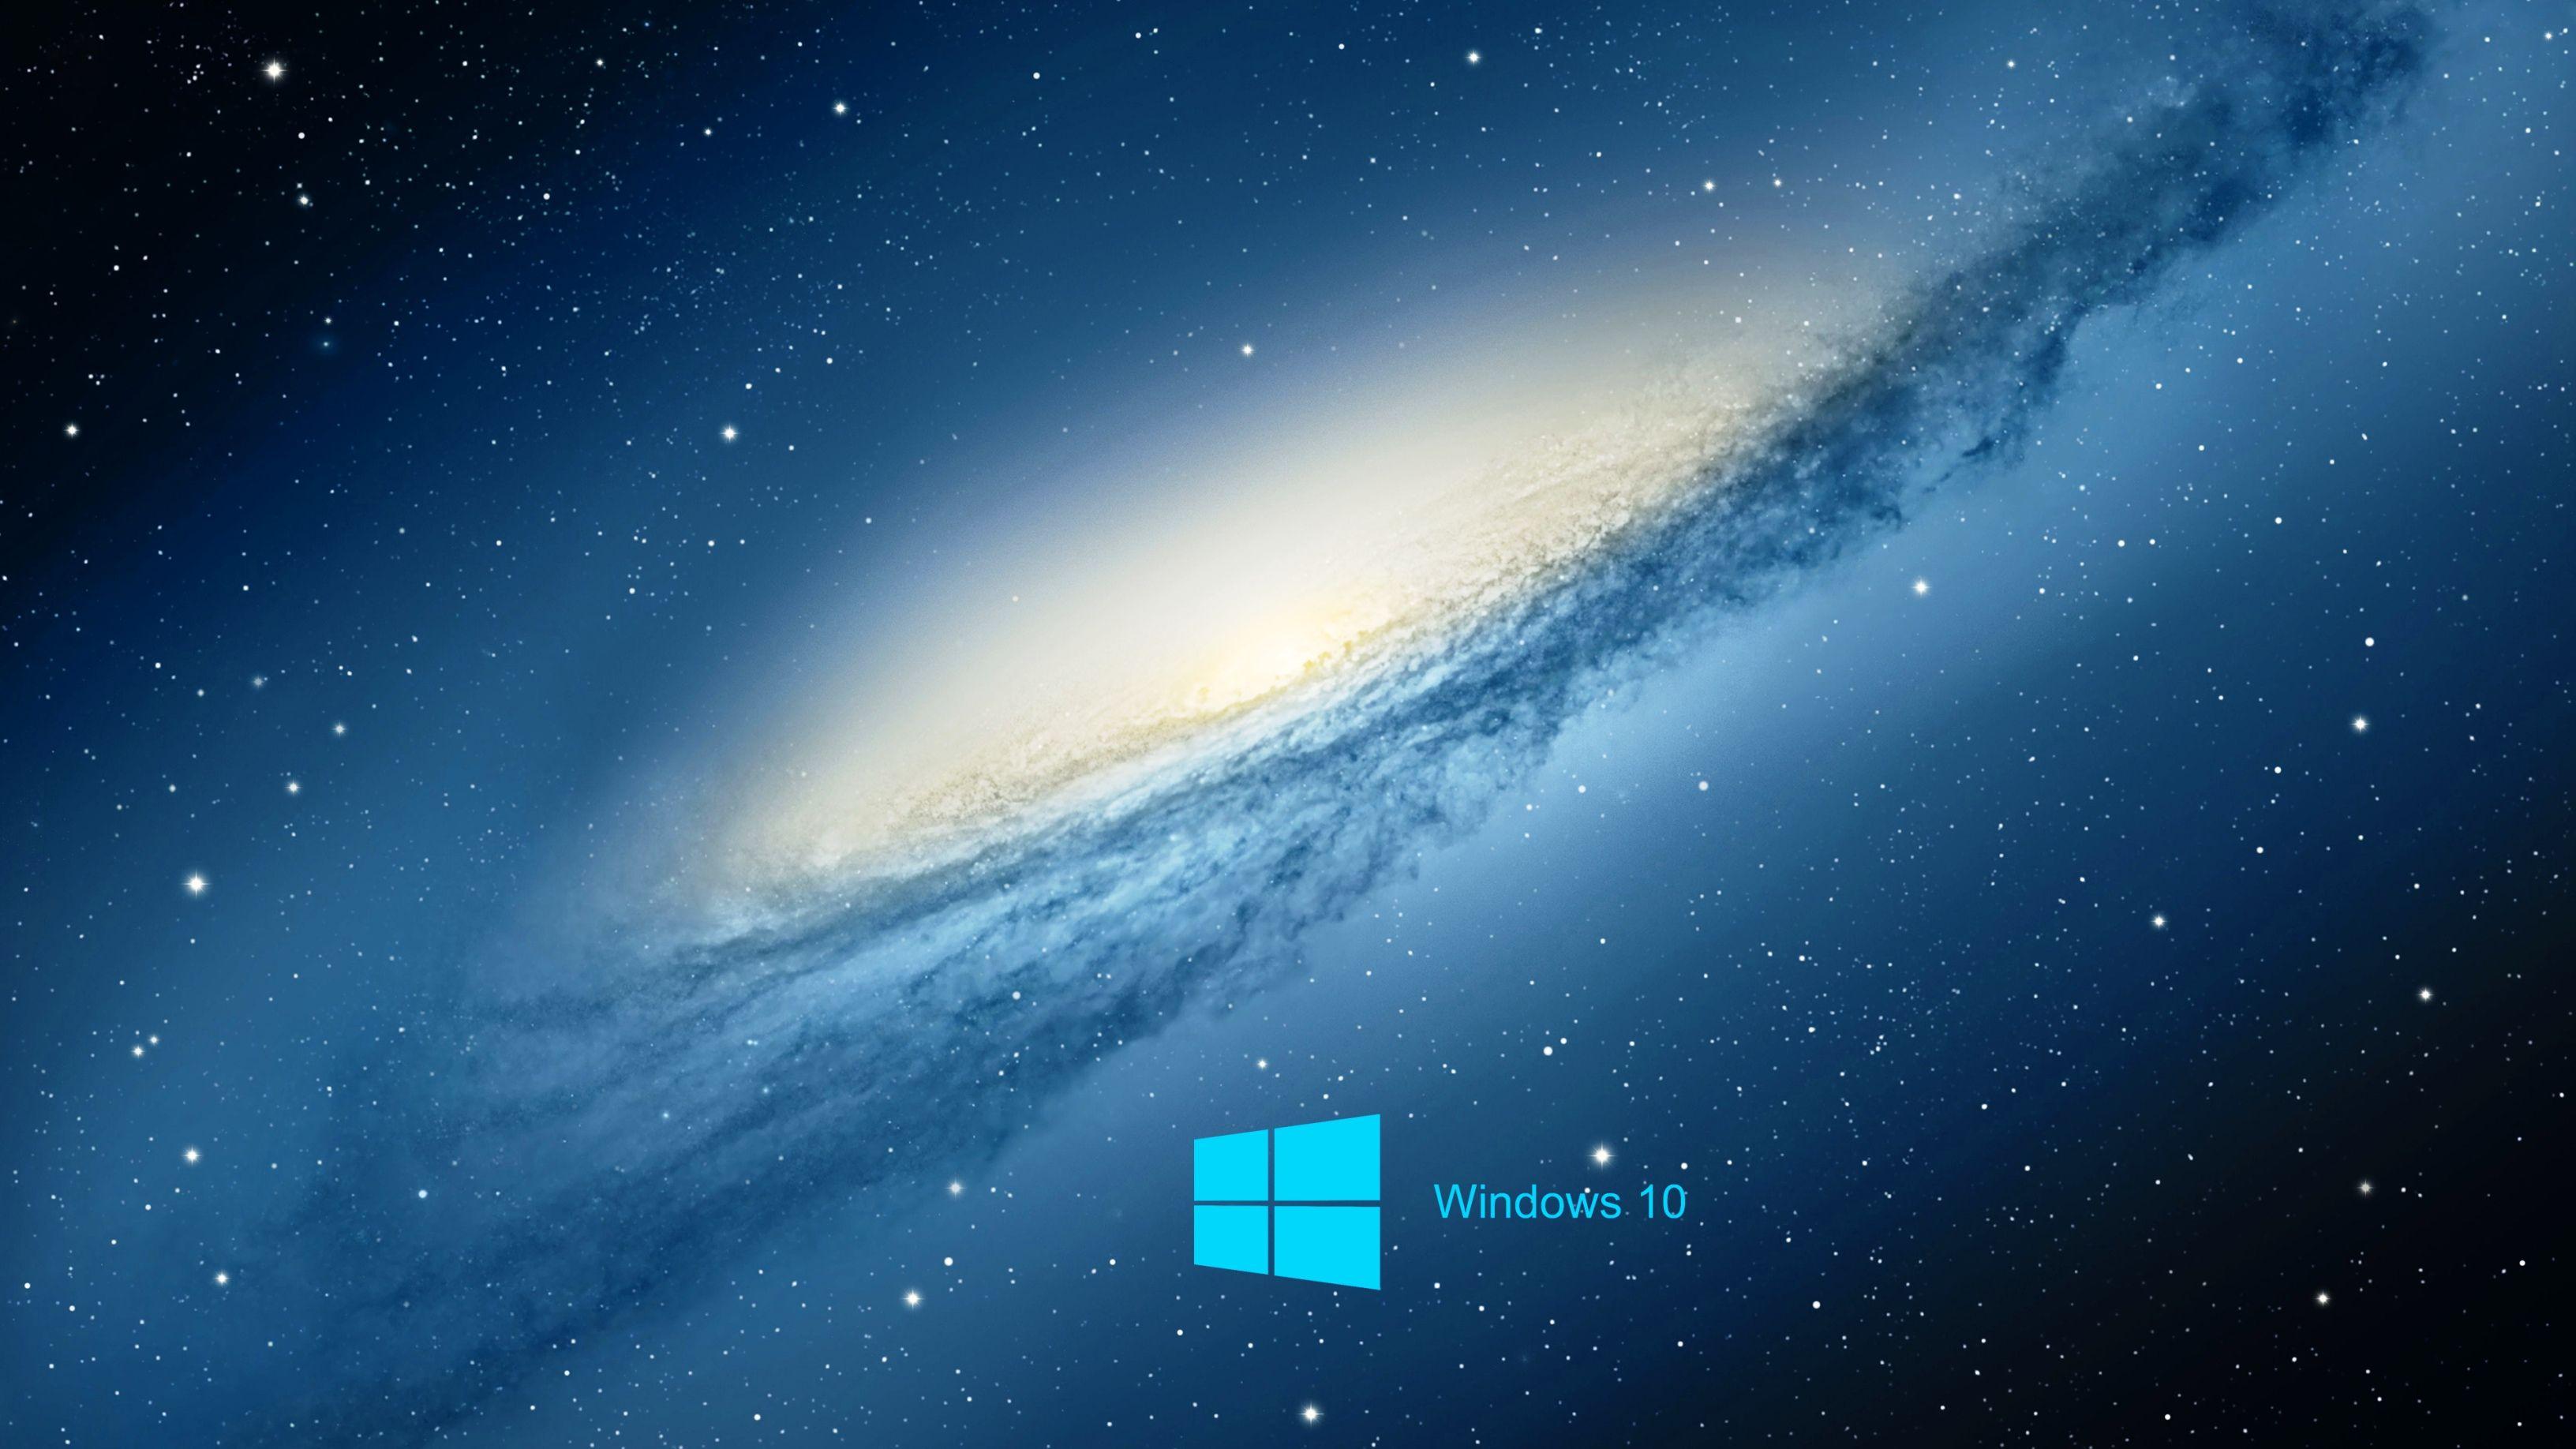 View Windows 10 Desktop Wallpapers 4K Pictures - 4K Wallpaper Gallery